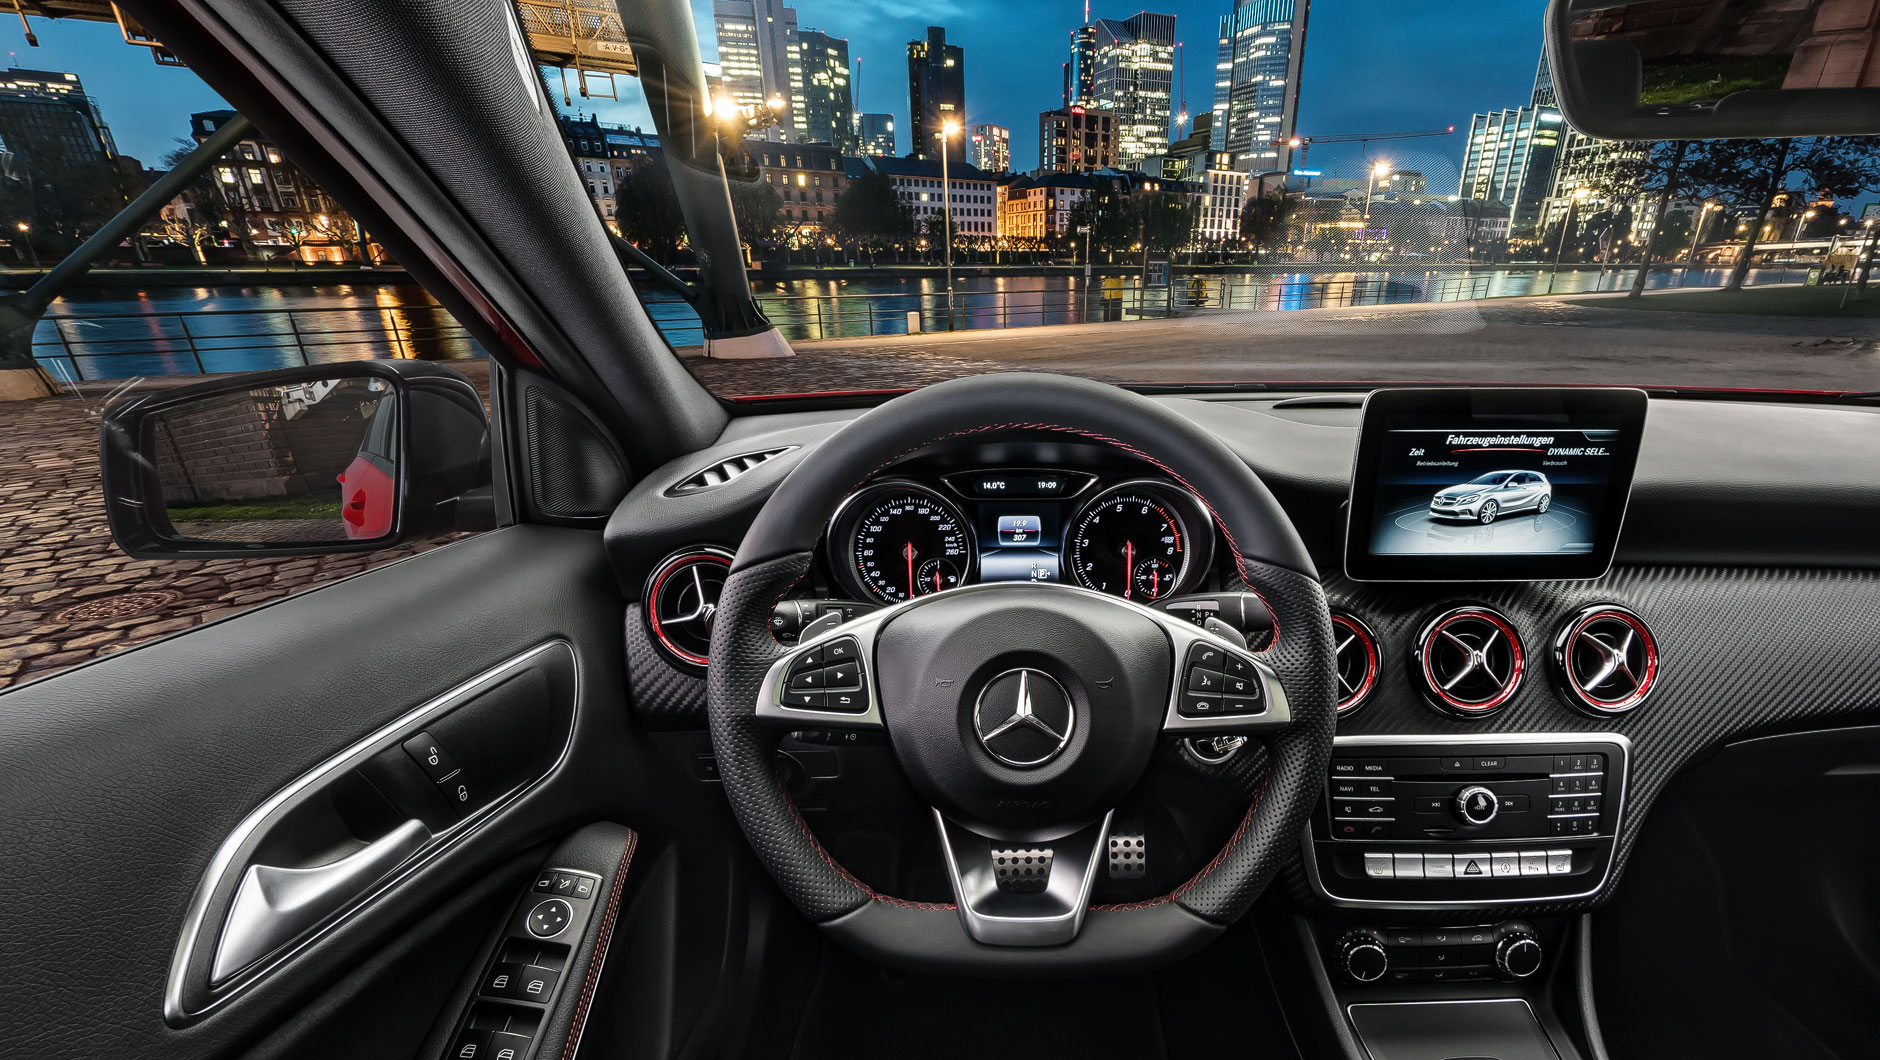 Autoinnenraum / Interior einer Mercedes-Benz A-Klasse. Bild aufgenommen aus der Perspektive des Fahrers. Das Fahrzeug steht am Mainufer in Frankfurt bei Nacht.